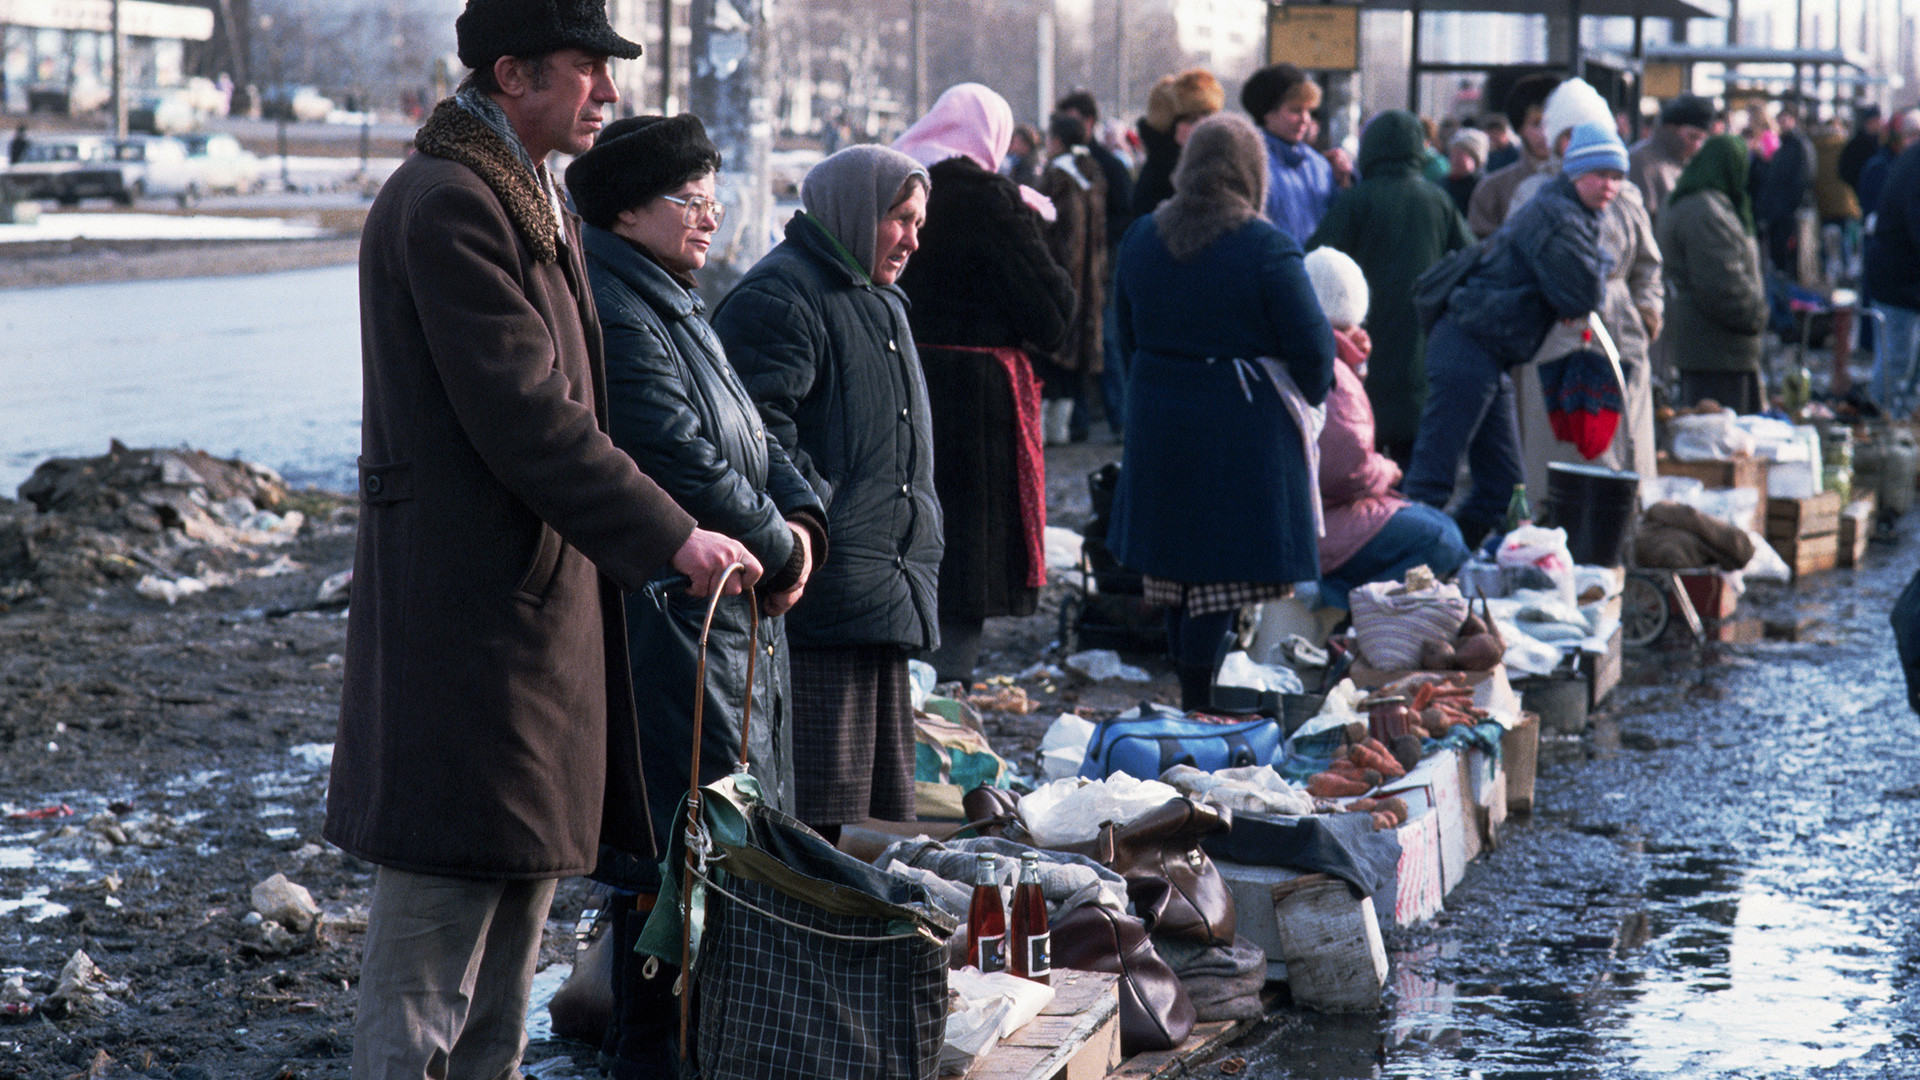 Des citoyens vendent leurs biens sur un marché installé le long d'une rue boueuse de Moscou.